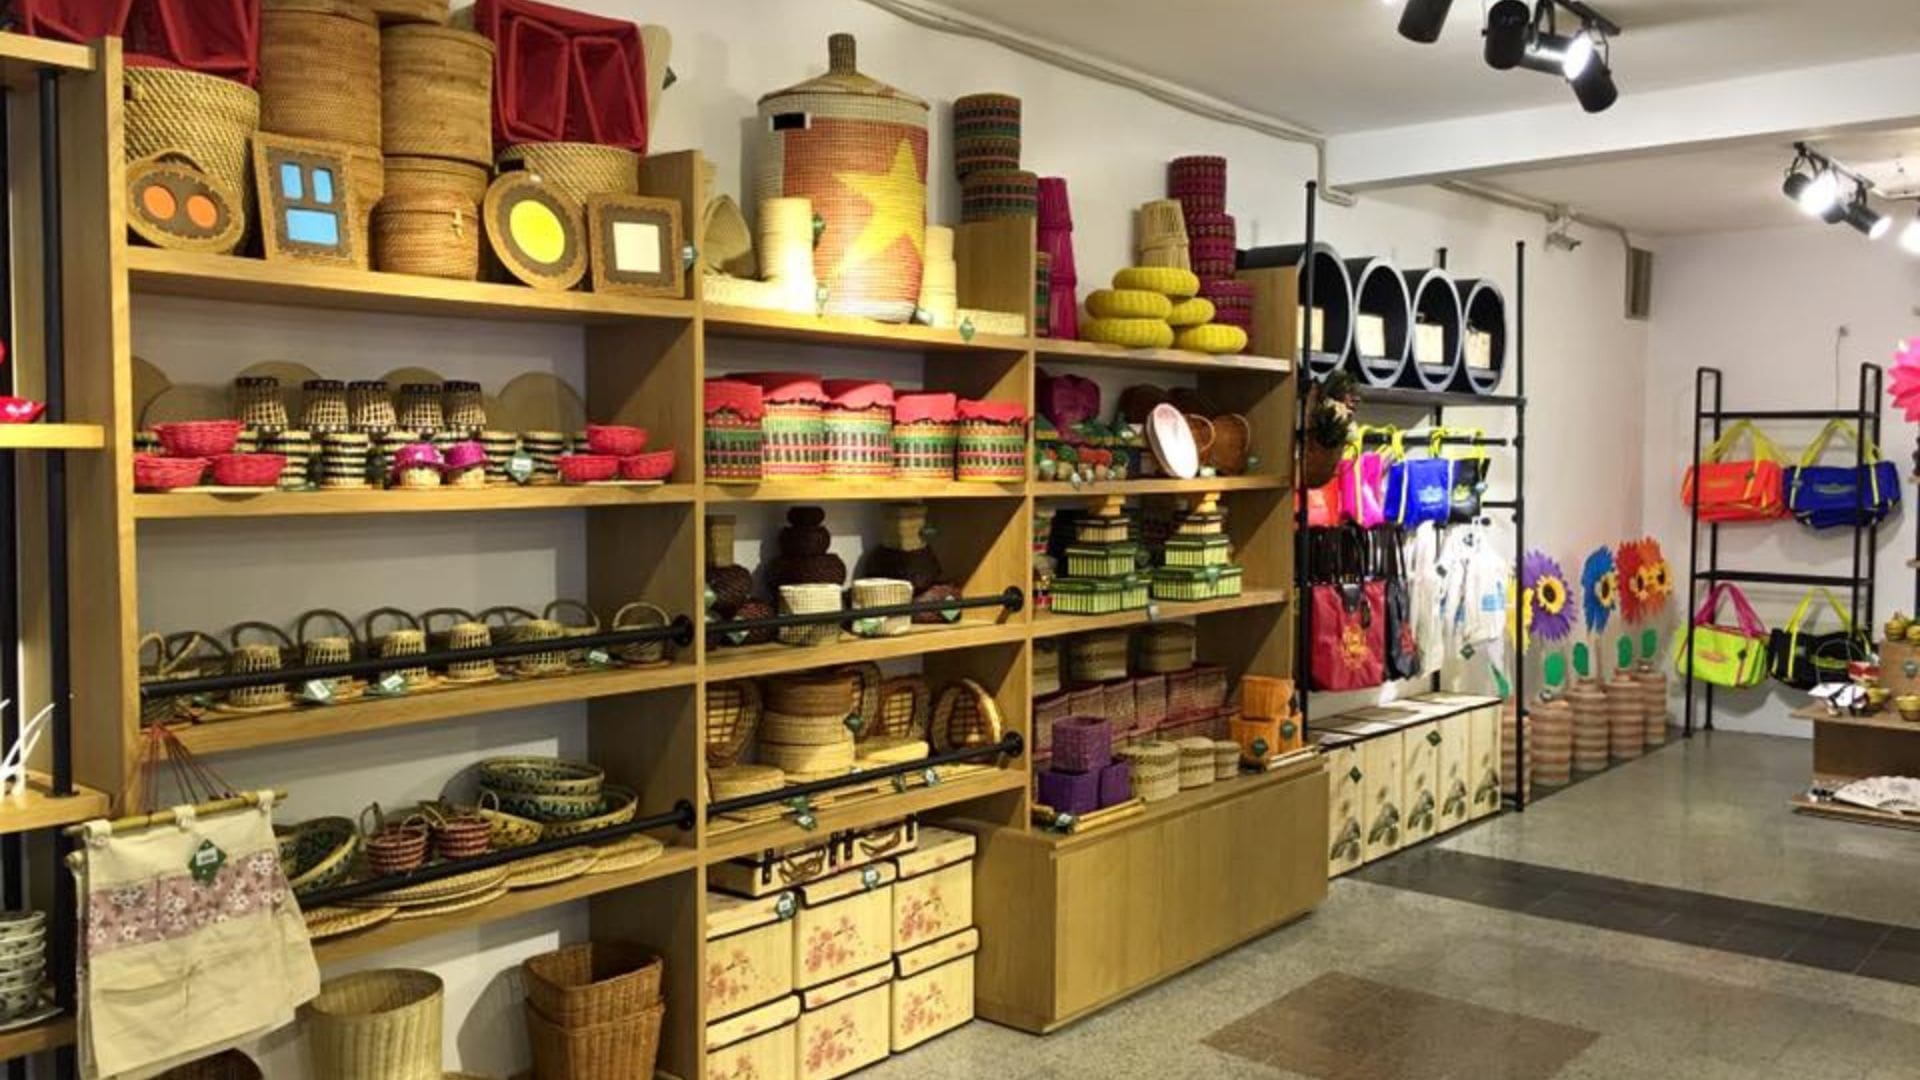 Cỏ May Coffee & Souvenir Shop - Địa điểm bán quà lưu niệm Đà Nẵng uy tín